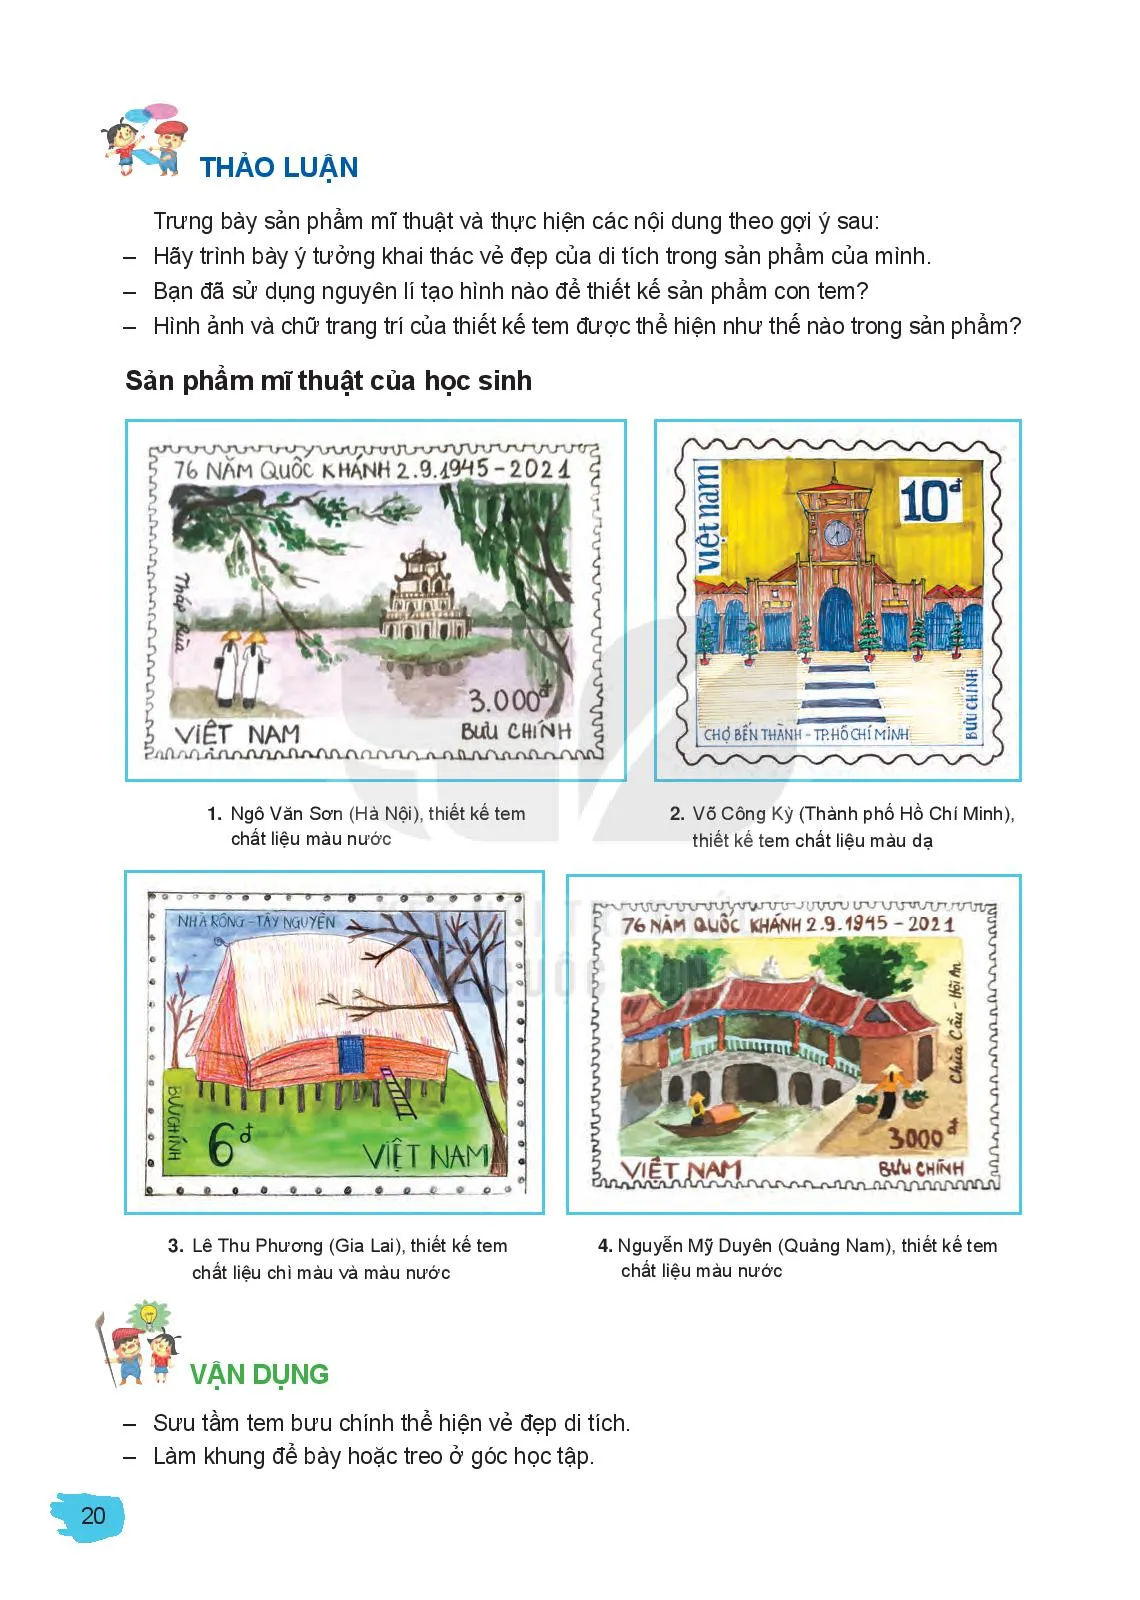 Bài 4: Hình ảnh di tích trong thiết kế tem bưu chính